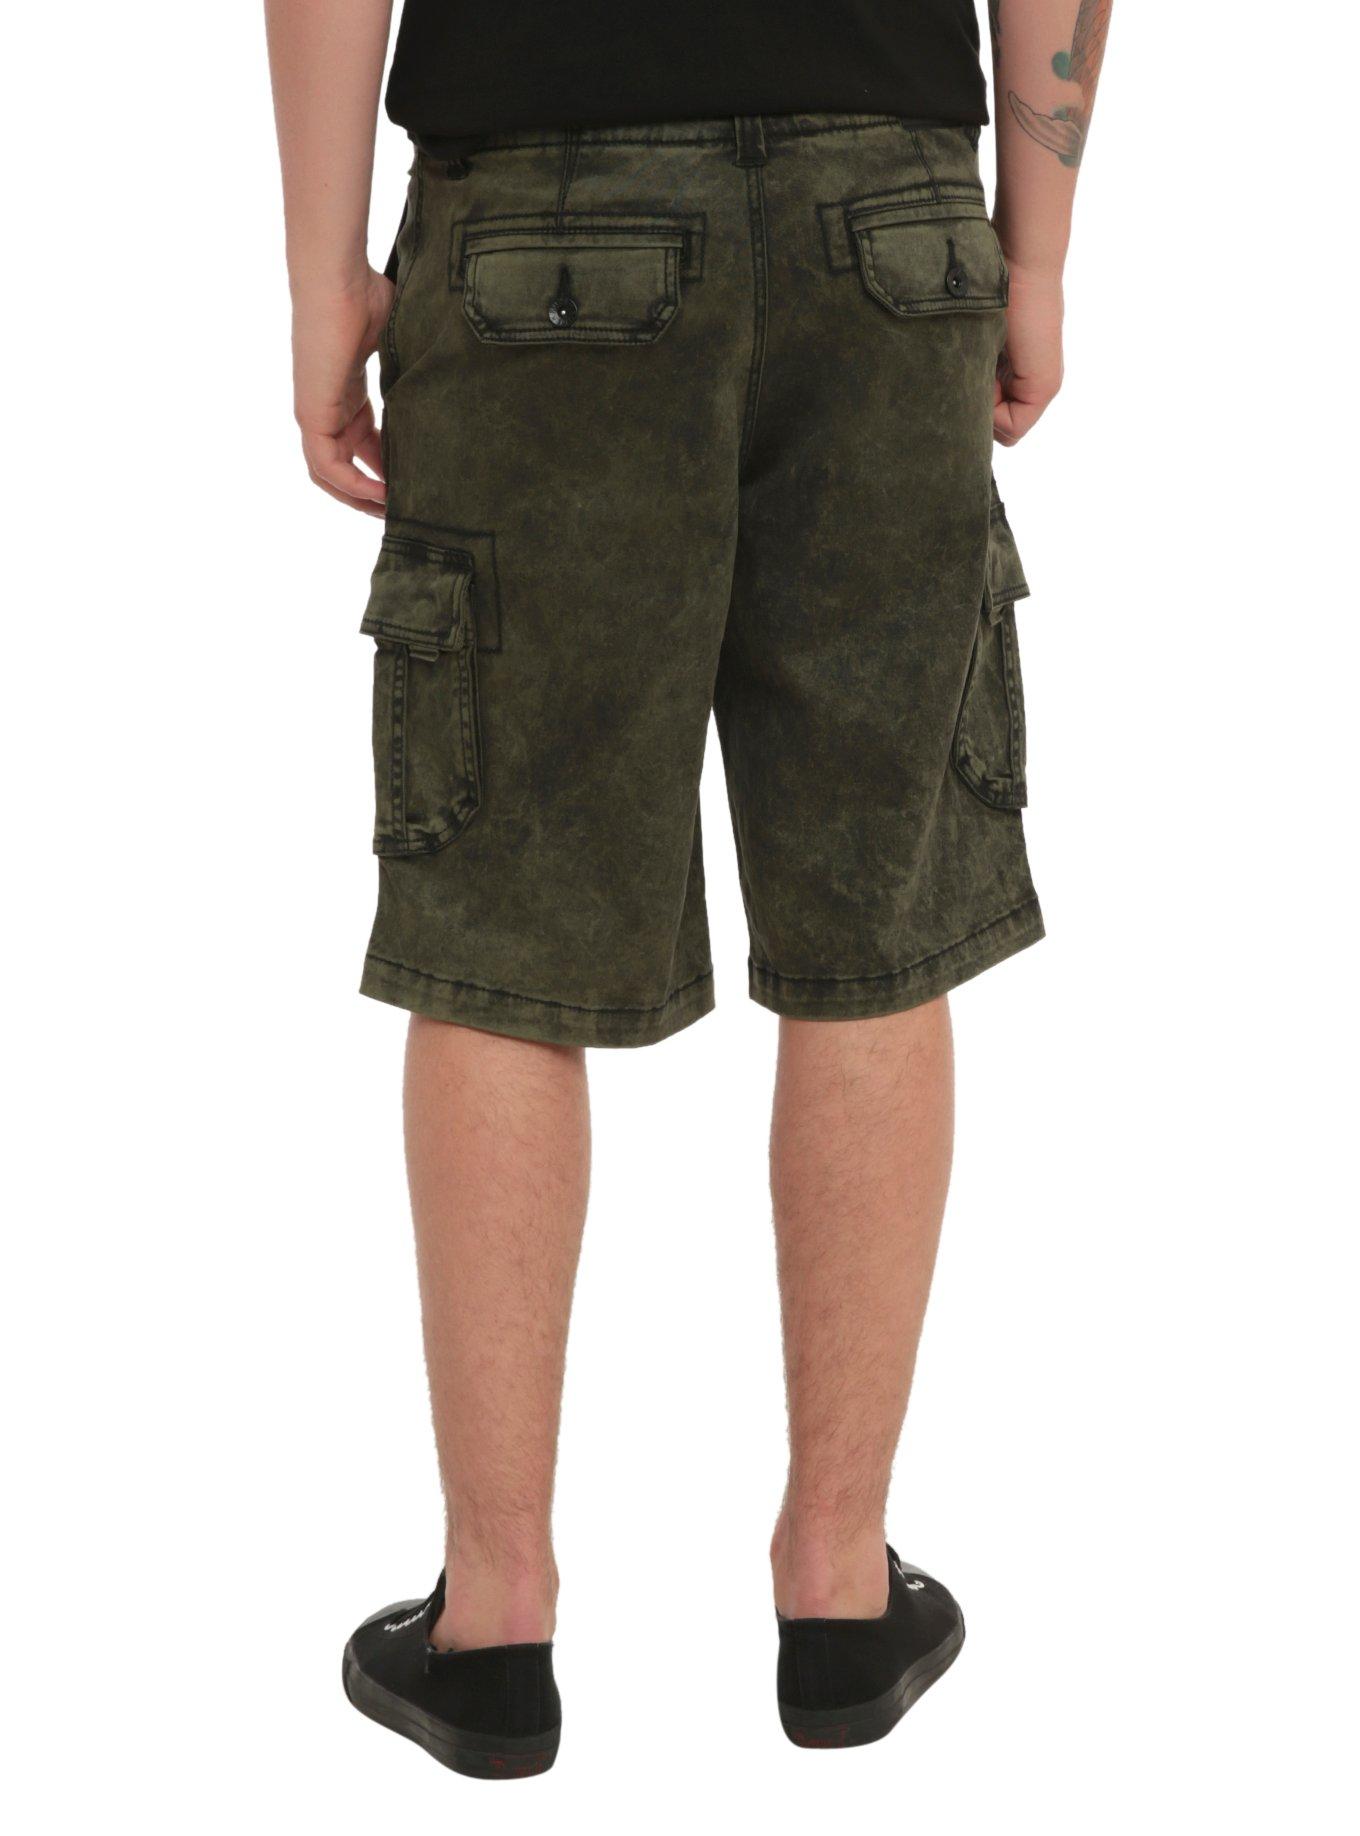 RUDE Olive Black Wash Cargo Shorts, OLIVE, alternate